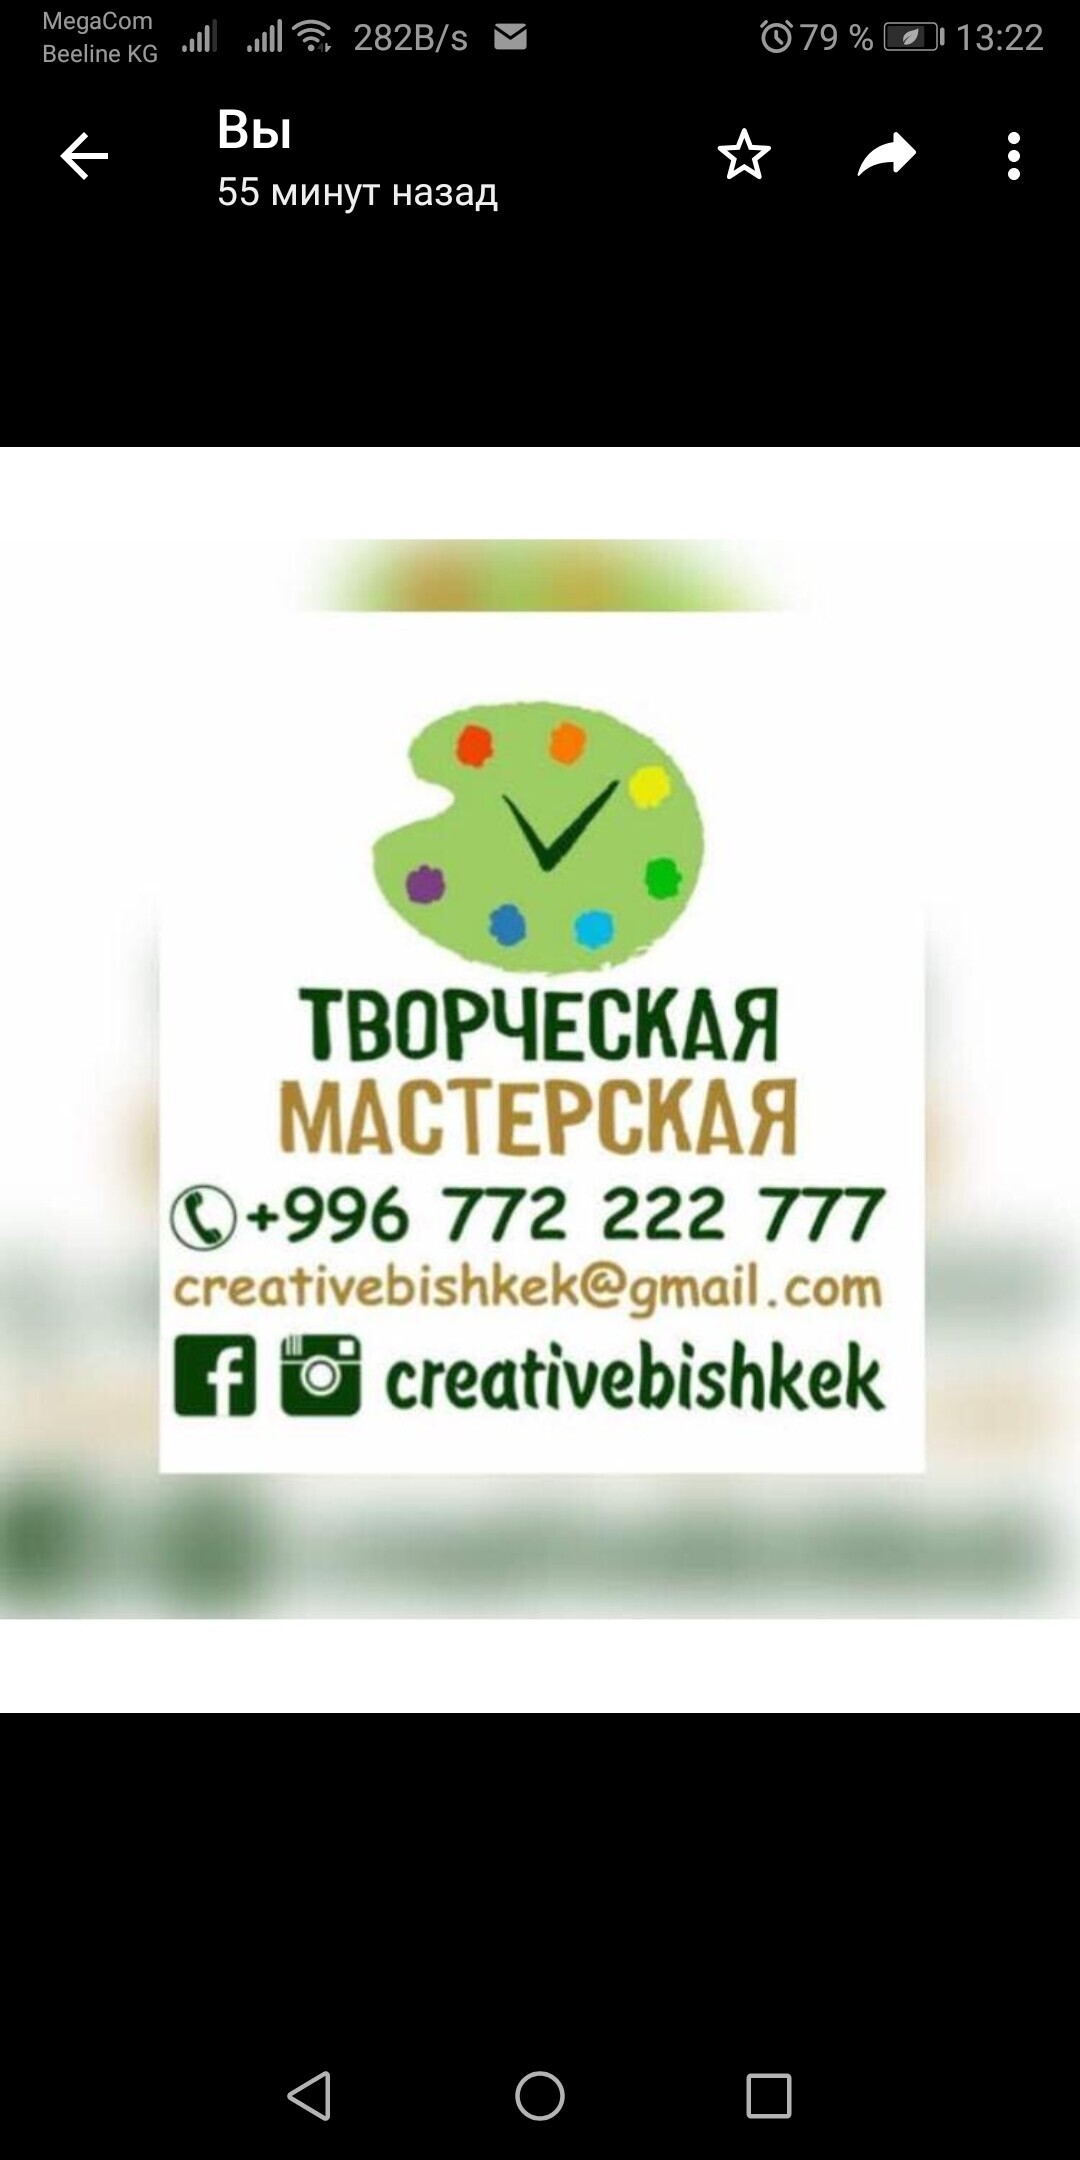 РПК "ТворческаяМастерская" ➤ Кыргызстан ᐉ Бизнес-профиль компании на lalafo.kg